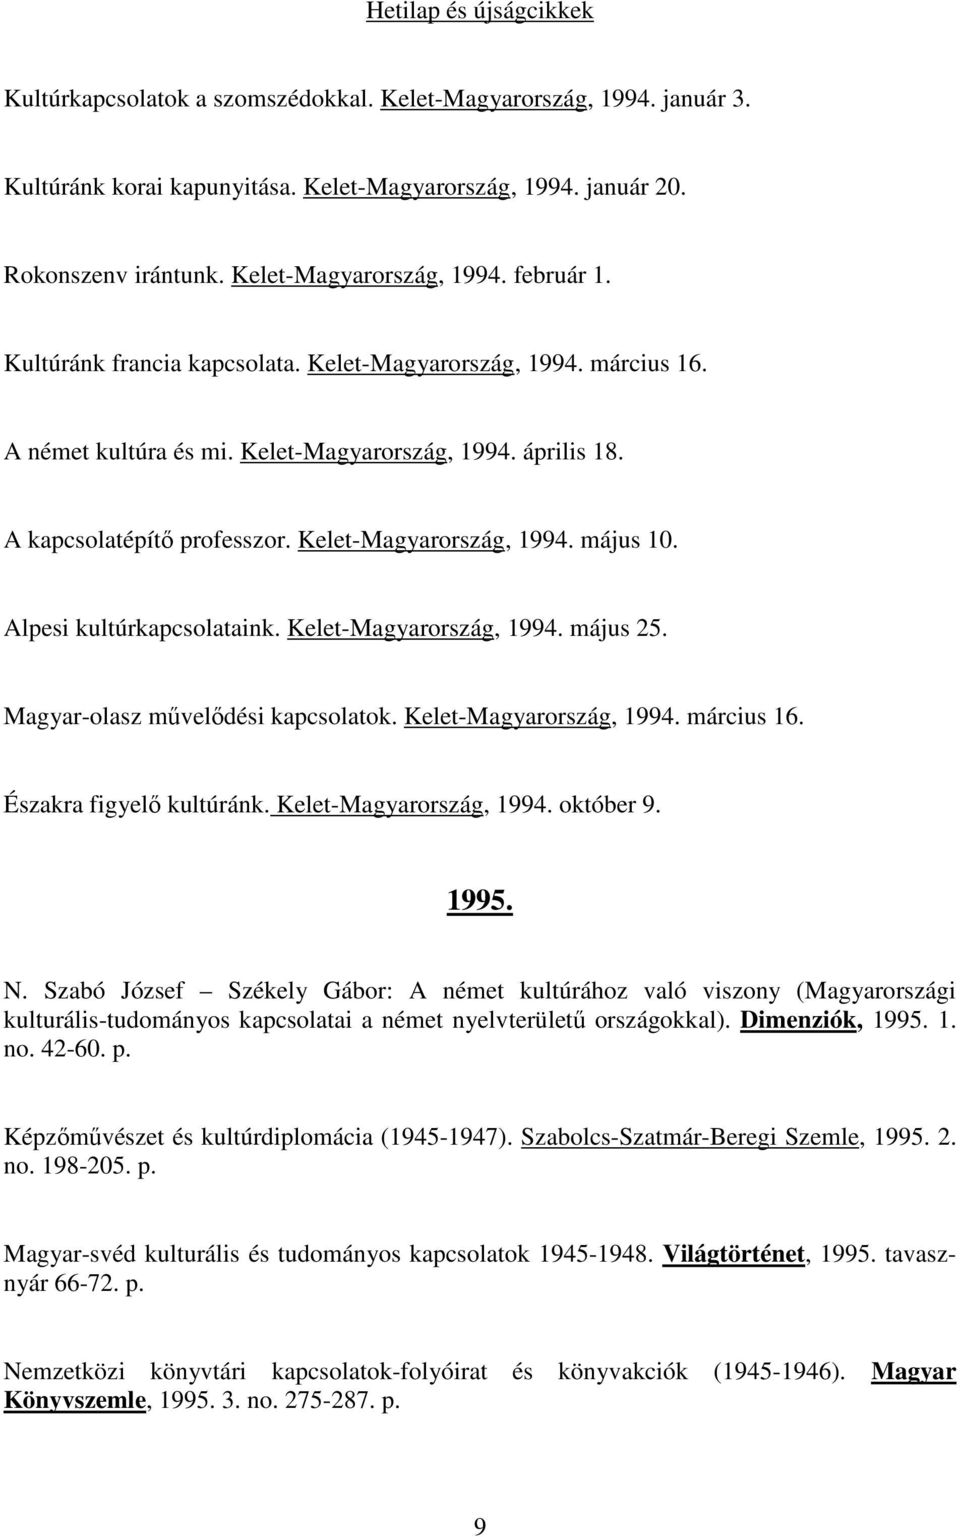 Kelet-Magyarország, 1994. május 10. Alpesi kultúrkapcsolataink. Kelet-Magyarország, 1994. május 25. Magyar-olasz művelődési kapcsolatok. Kelet-Magyarország, 1994. március 16.